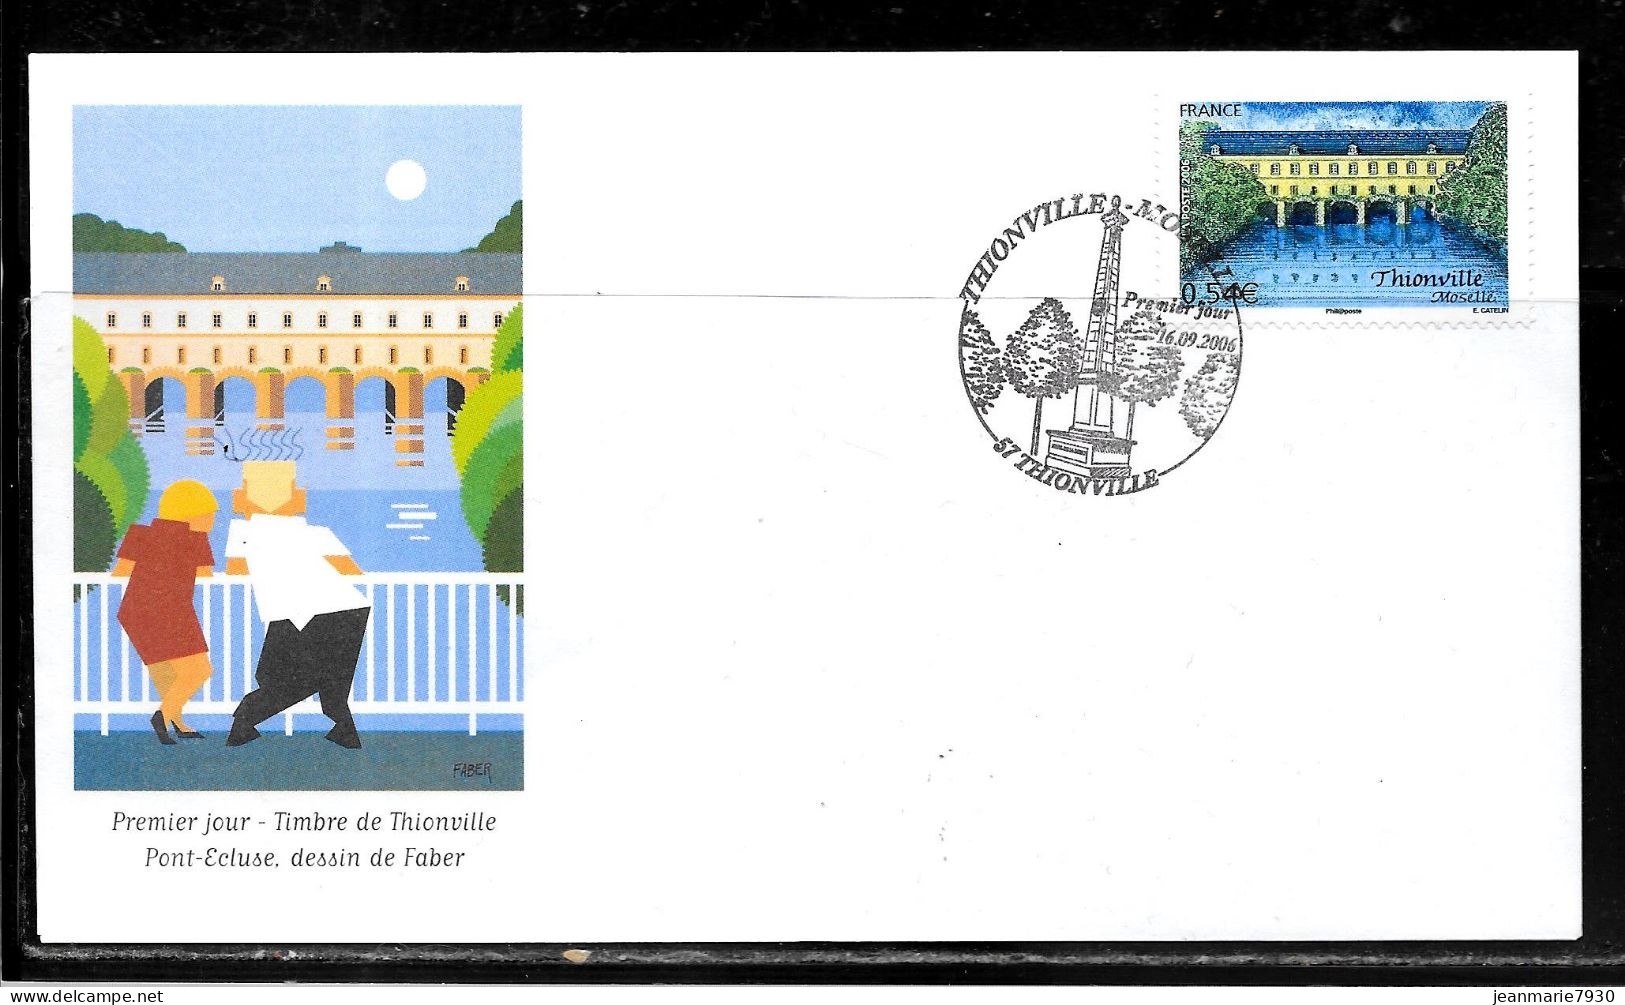 K174 - N° 3952 SUR LETTRE DE THIONVILLE DU 16/09/06 - PREMIER JOUR - Commemorative Postmarks